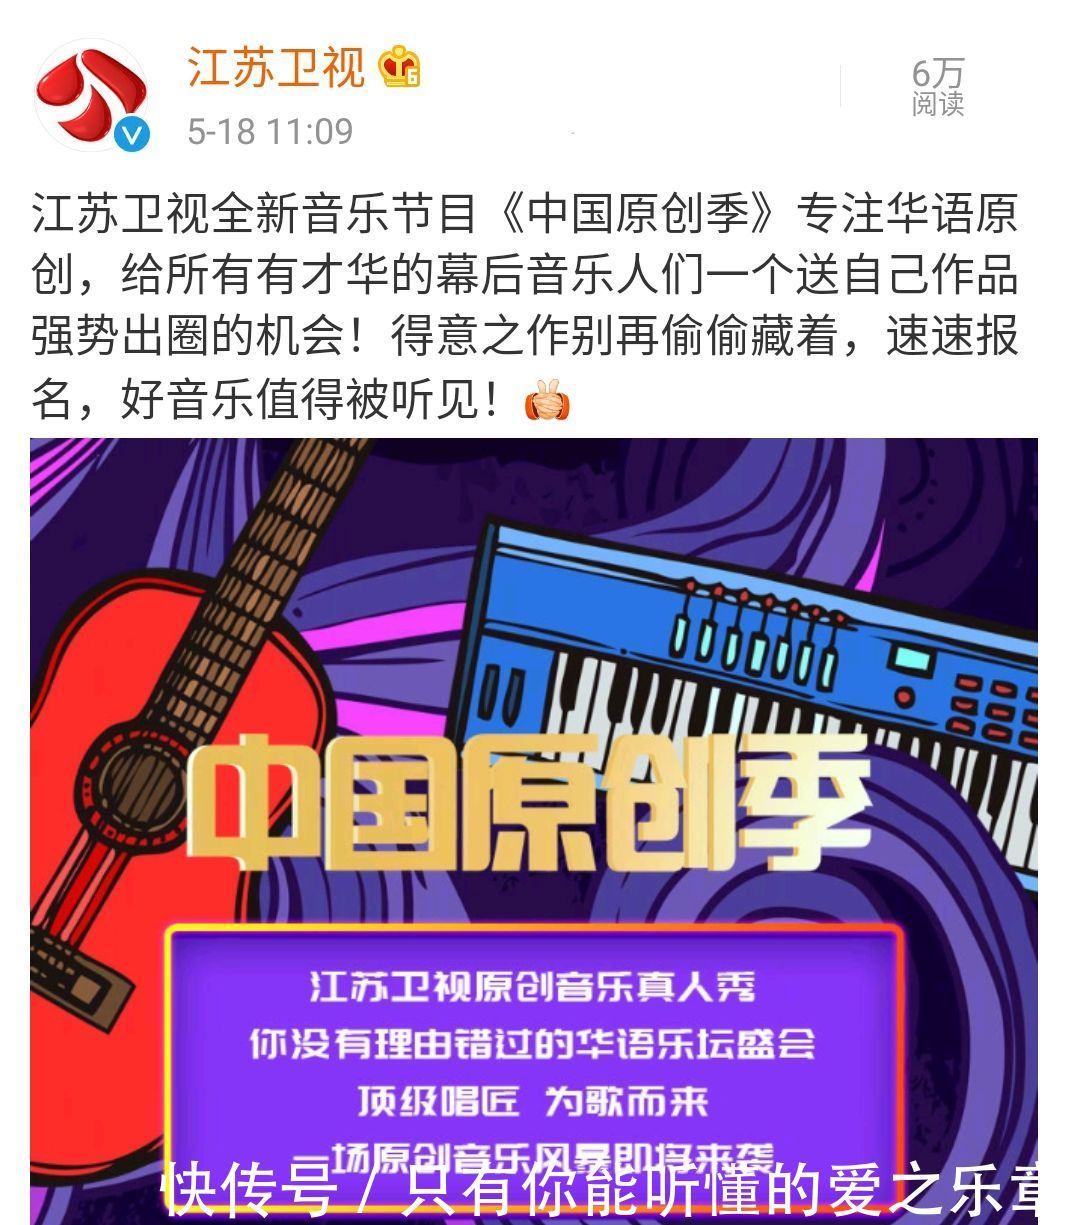 节目|《中国原创季》要来了，薛之谦确认加盟，你希望哪些歌手加盟节目